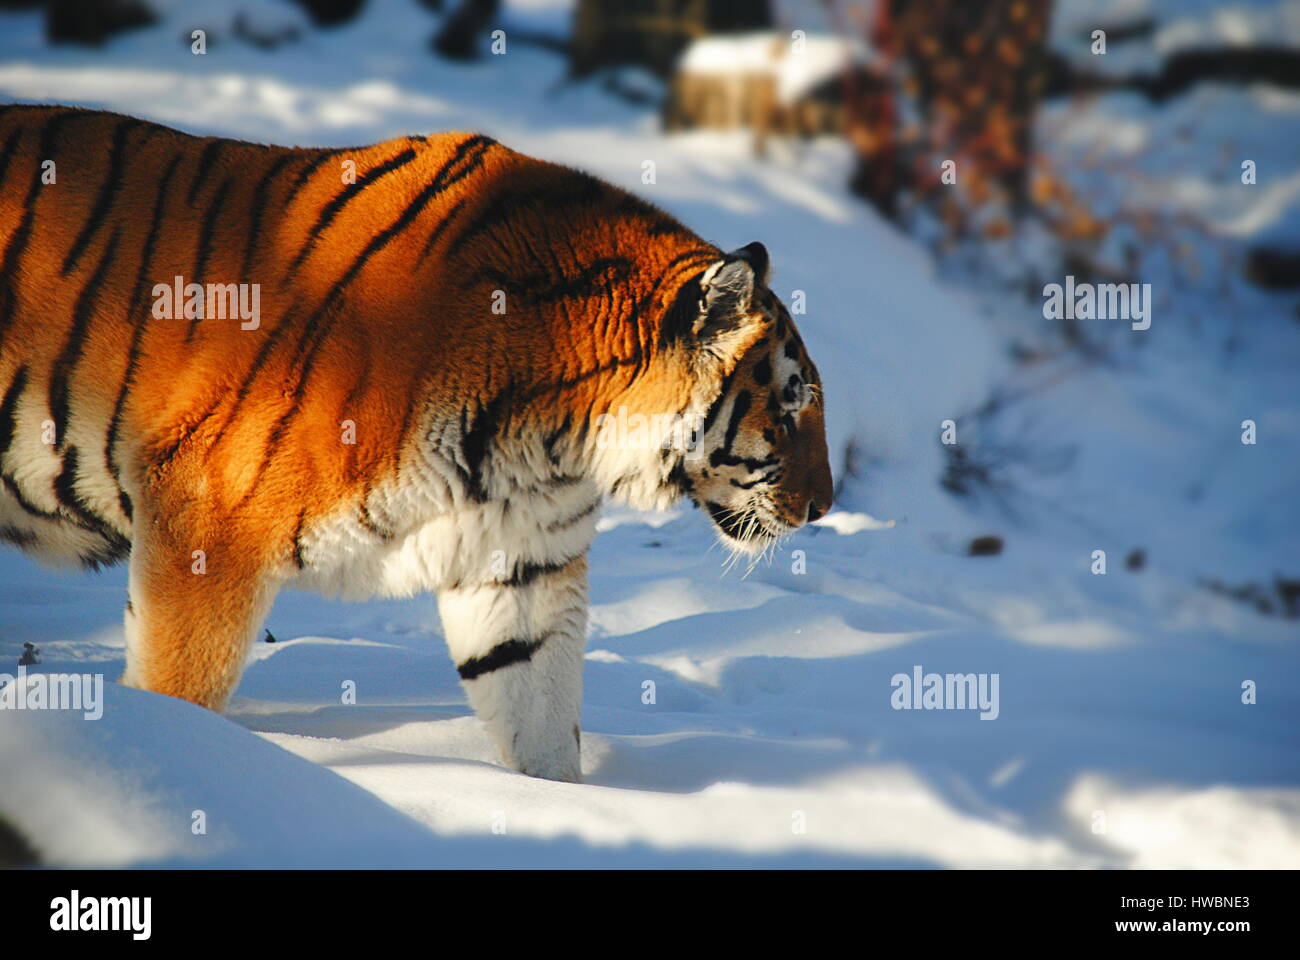 Tigre di amur nella neve (zoo di Calgary, Canada) Foto Stock